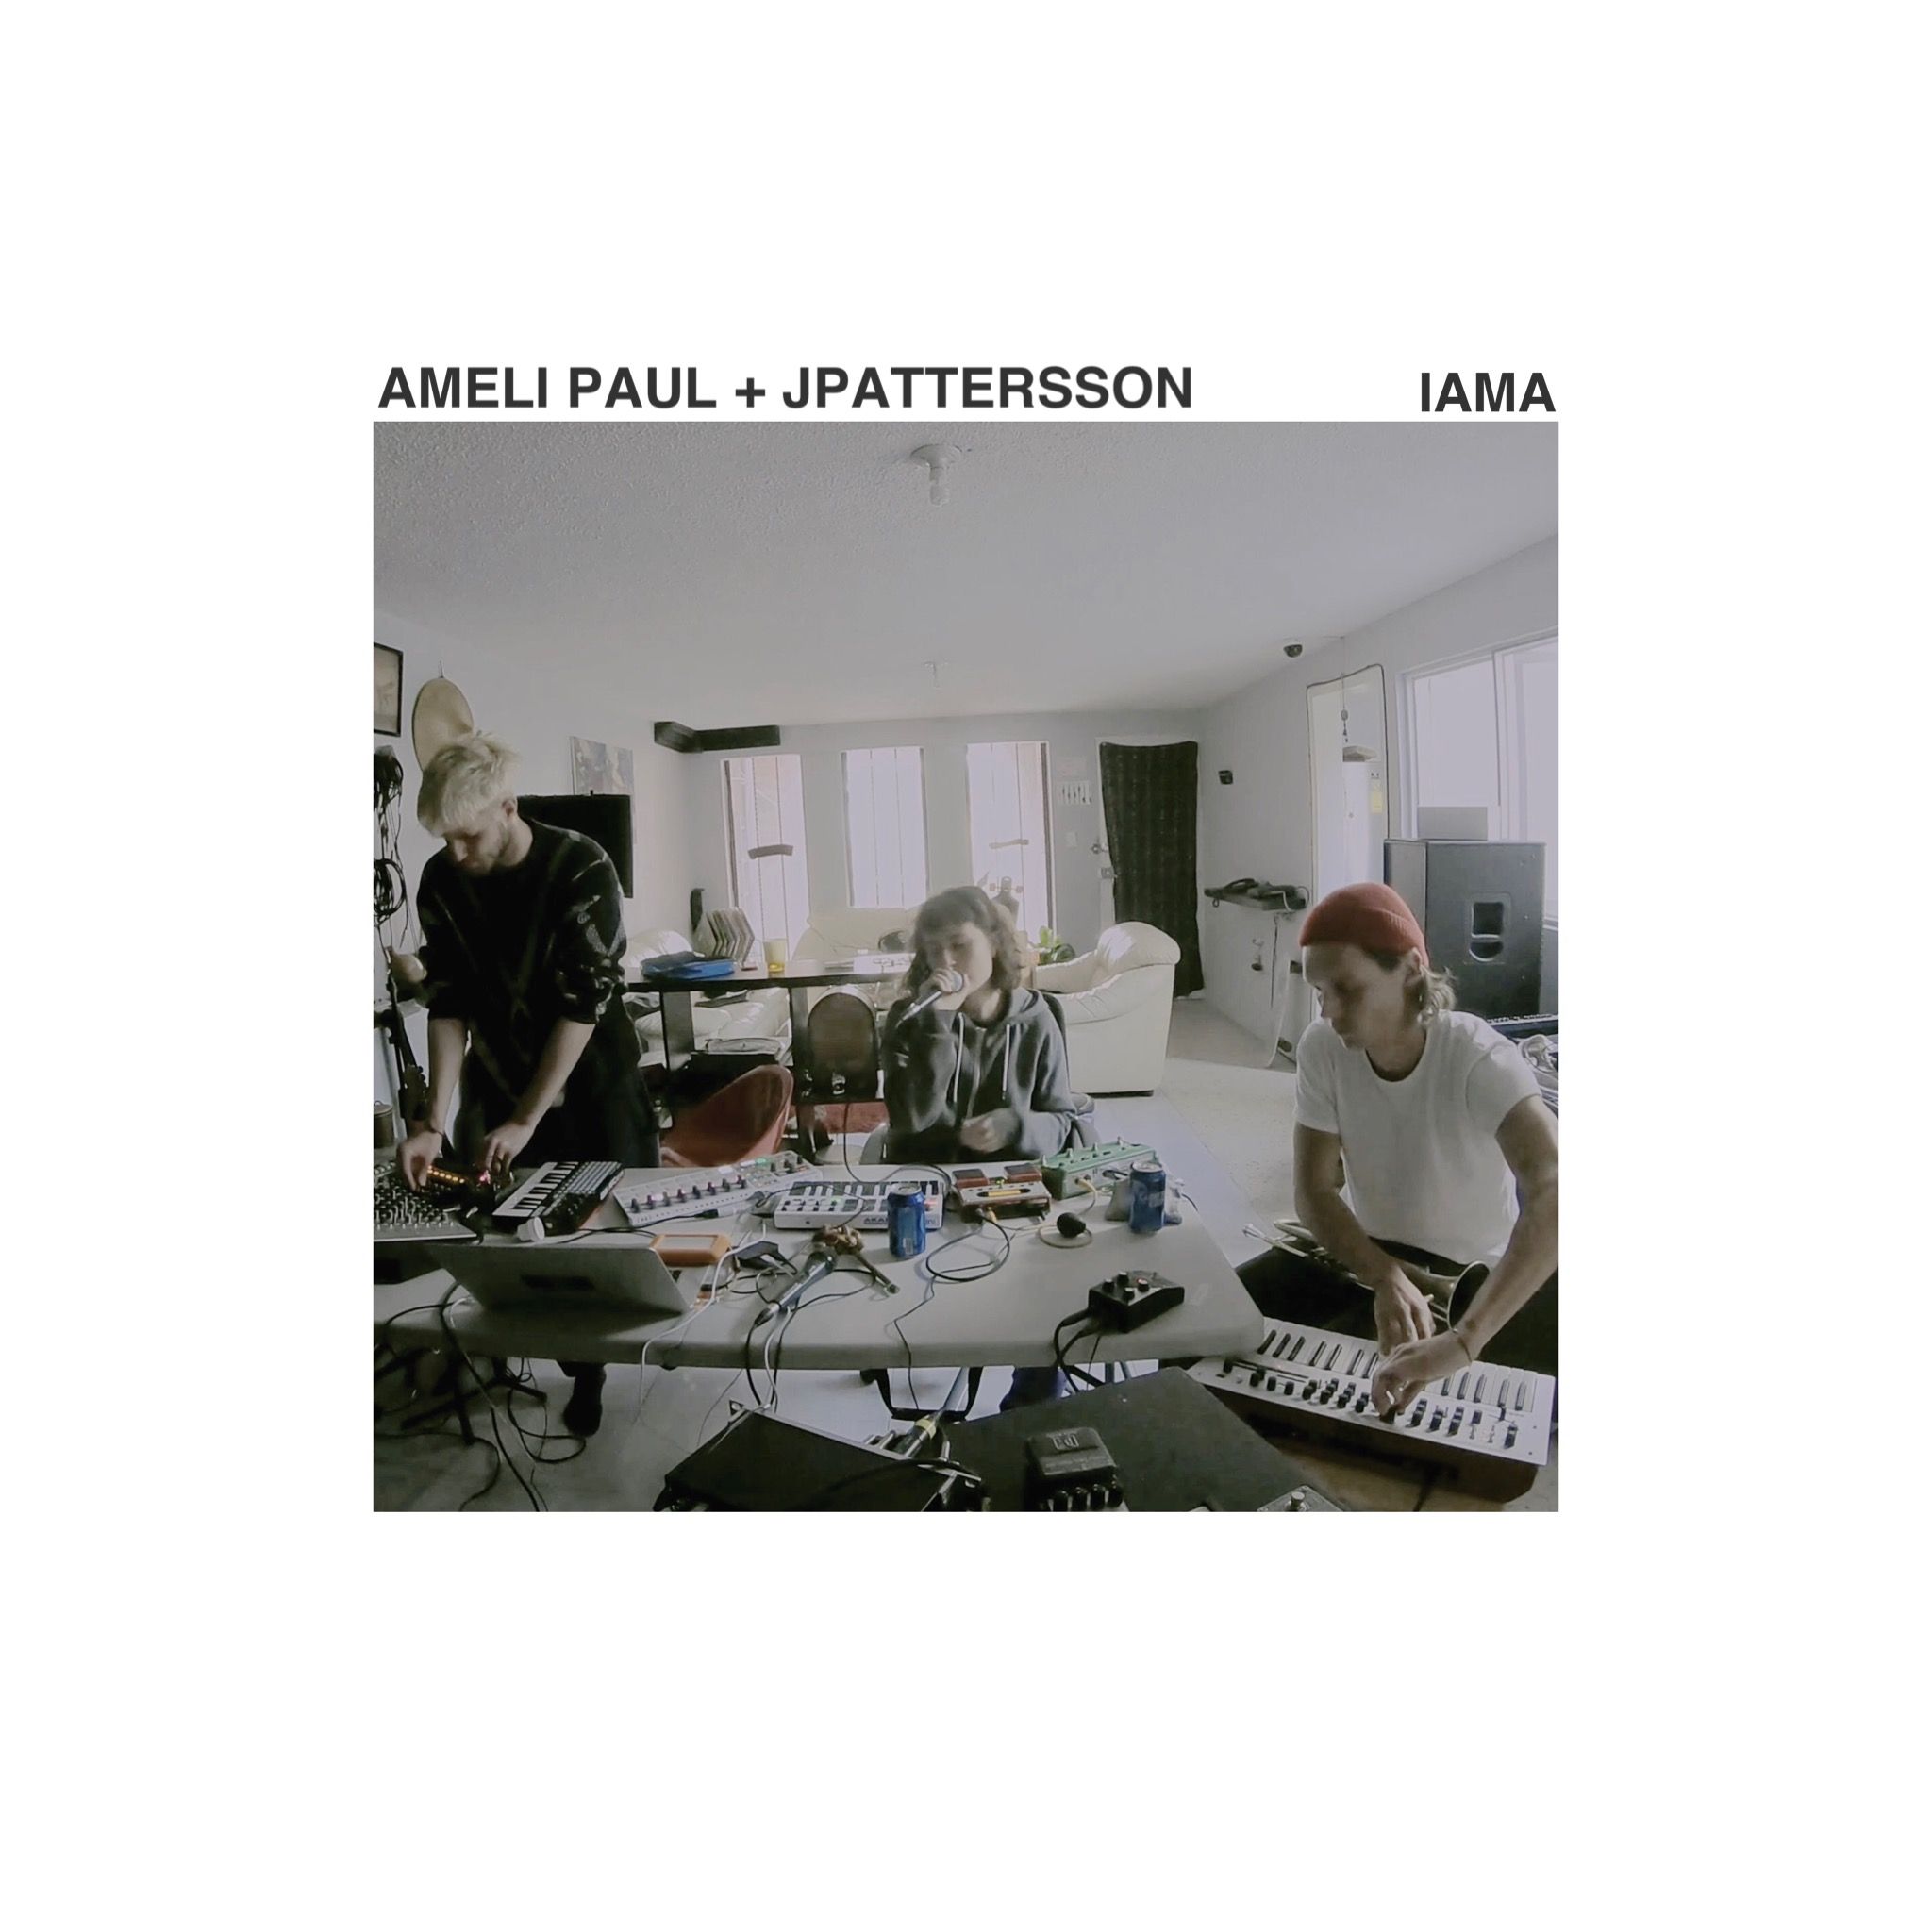 Download Ameli Paul + JPattersson - Iama